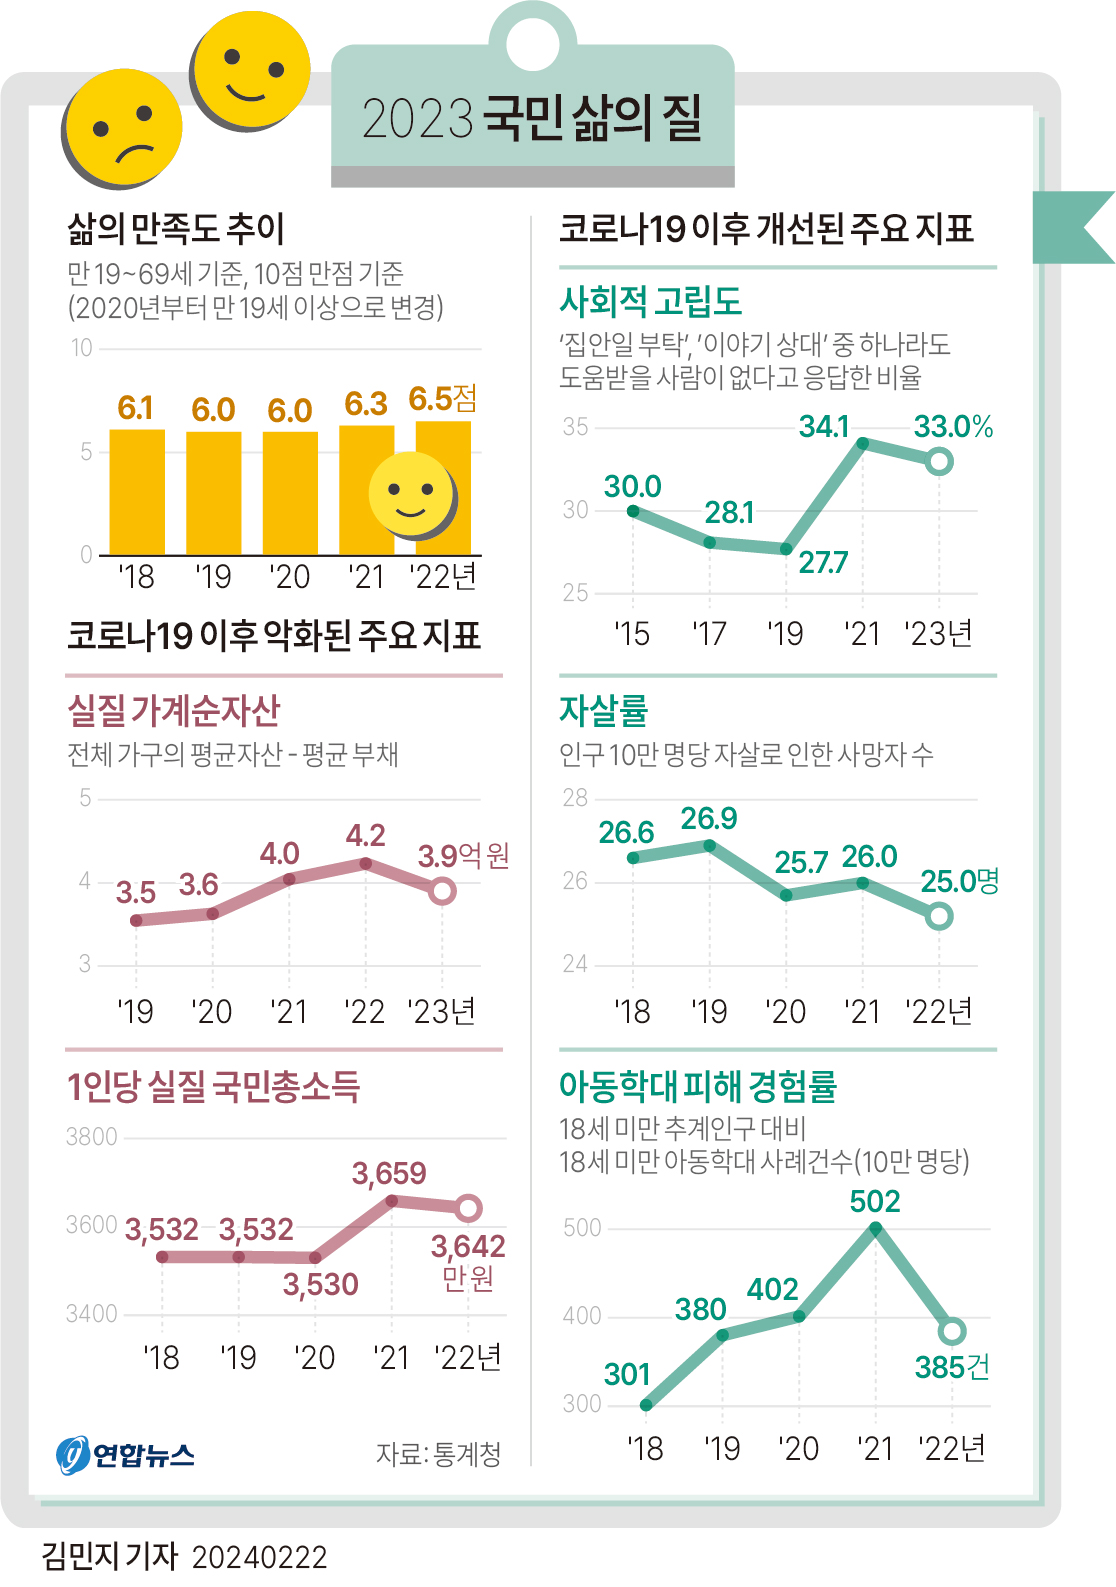 22일 통계청이 발표한 '국민 삶의 질 2023' 보고서에 따르면 2022년 한국인 삶의 만족도는 6.5점으로 전년보다 0.2점 높아졌다.